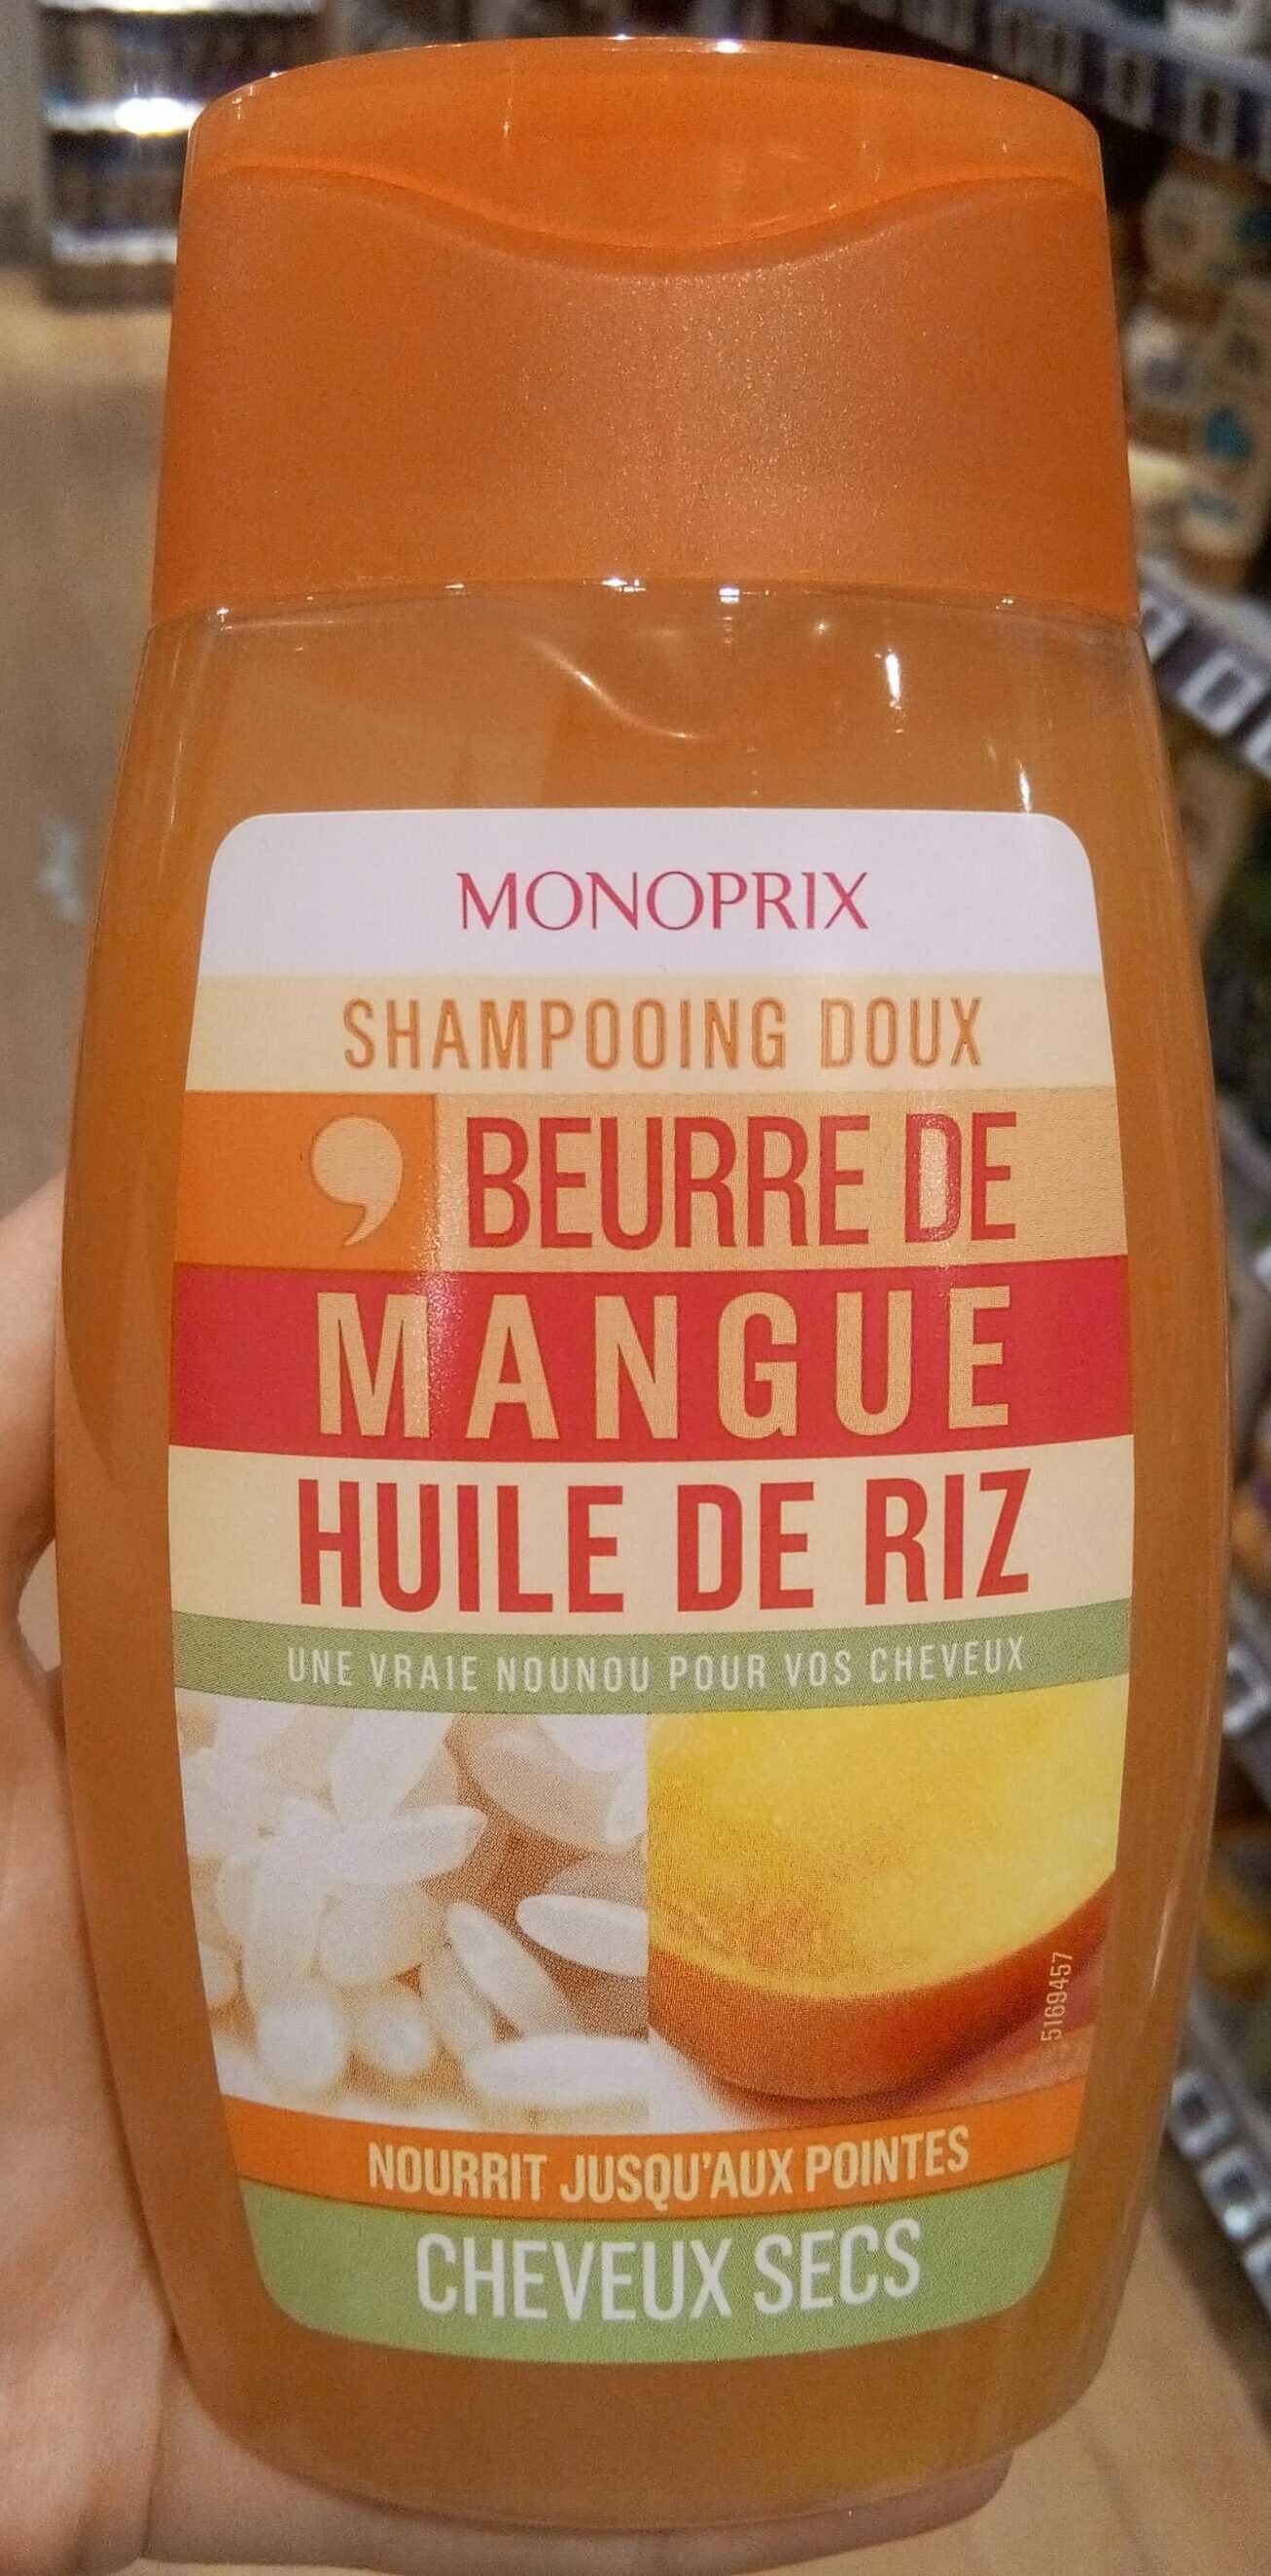 Shampooing doux beurre de mangue huile de riz - Product - fr